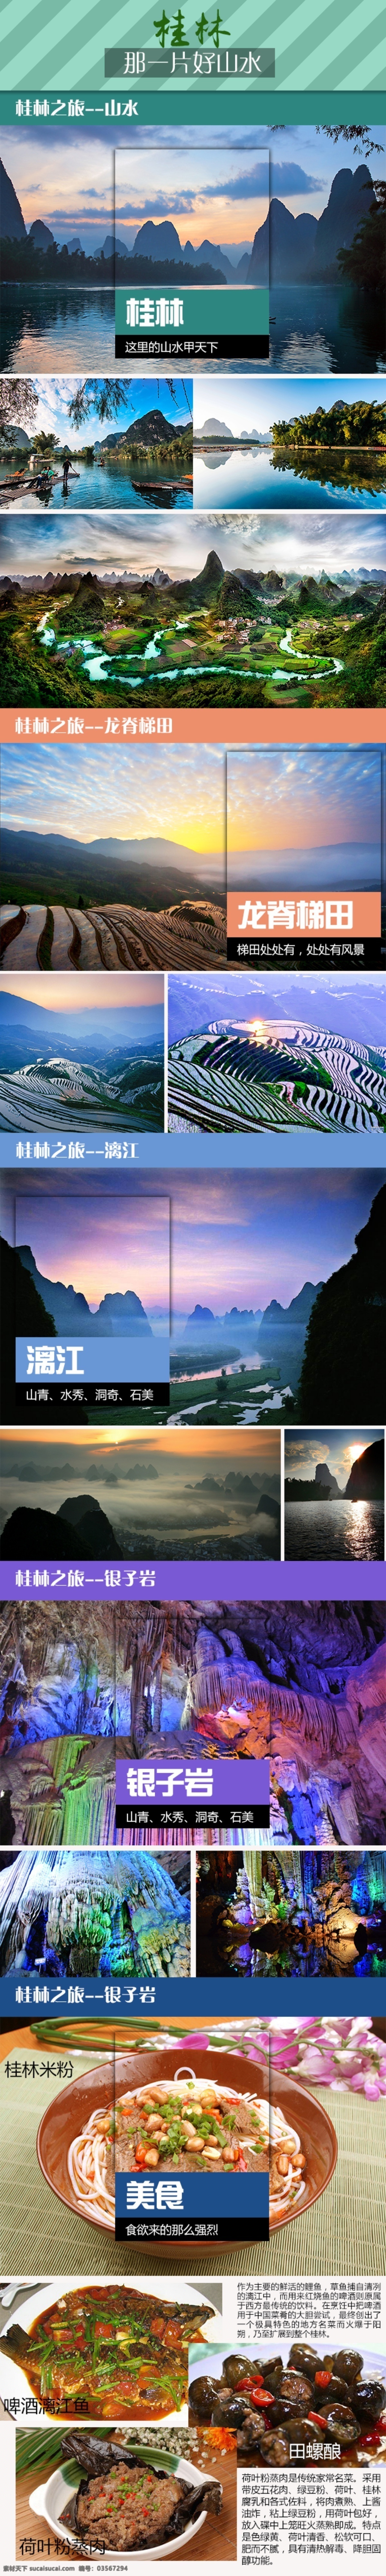 桂林 旅游景点 介绍 照片 排版 桂林旅游 景点介绍 原创设计 原创网页设计